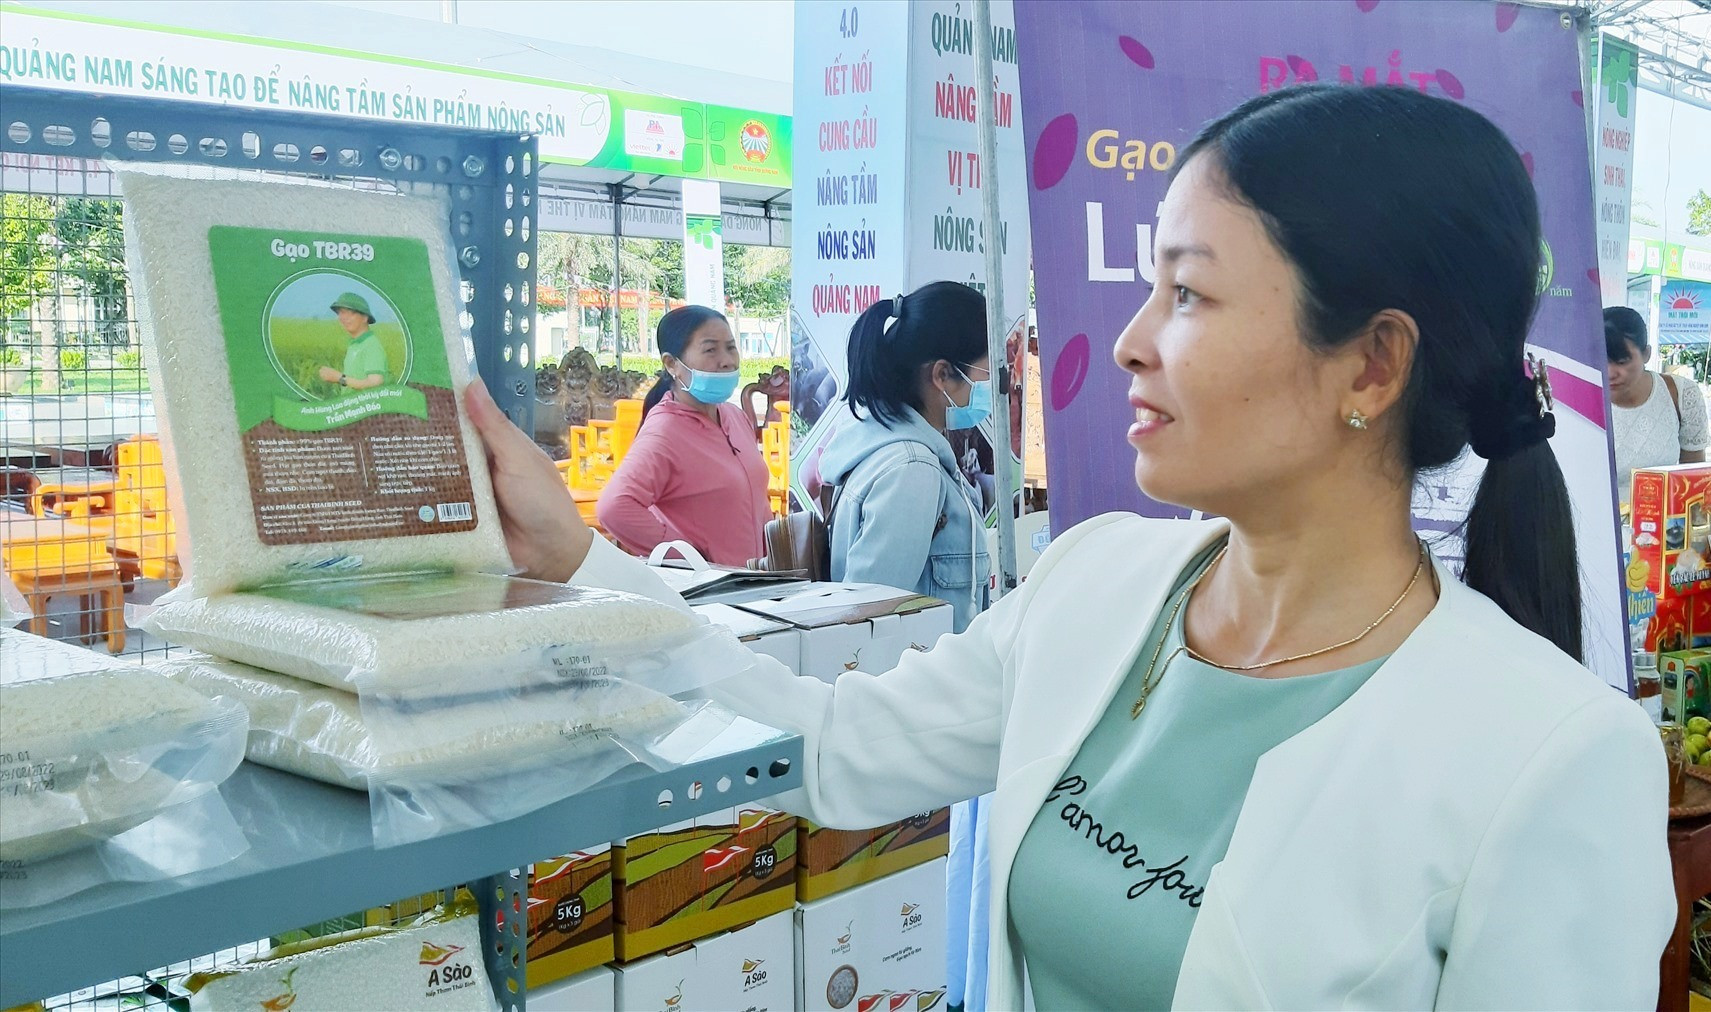 Khách hàng chọn mua sản phẩm gạo chất lượng cao của Tập đoàn ThaiBinh Seed. Ảnh: N.S